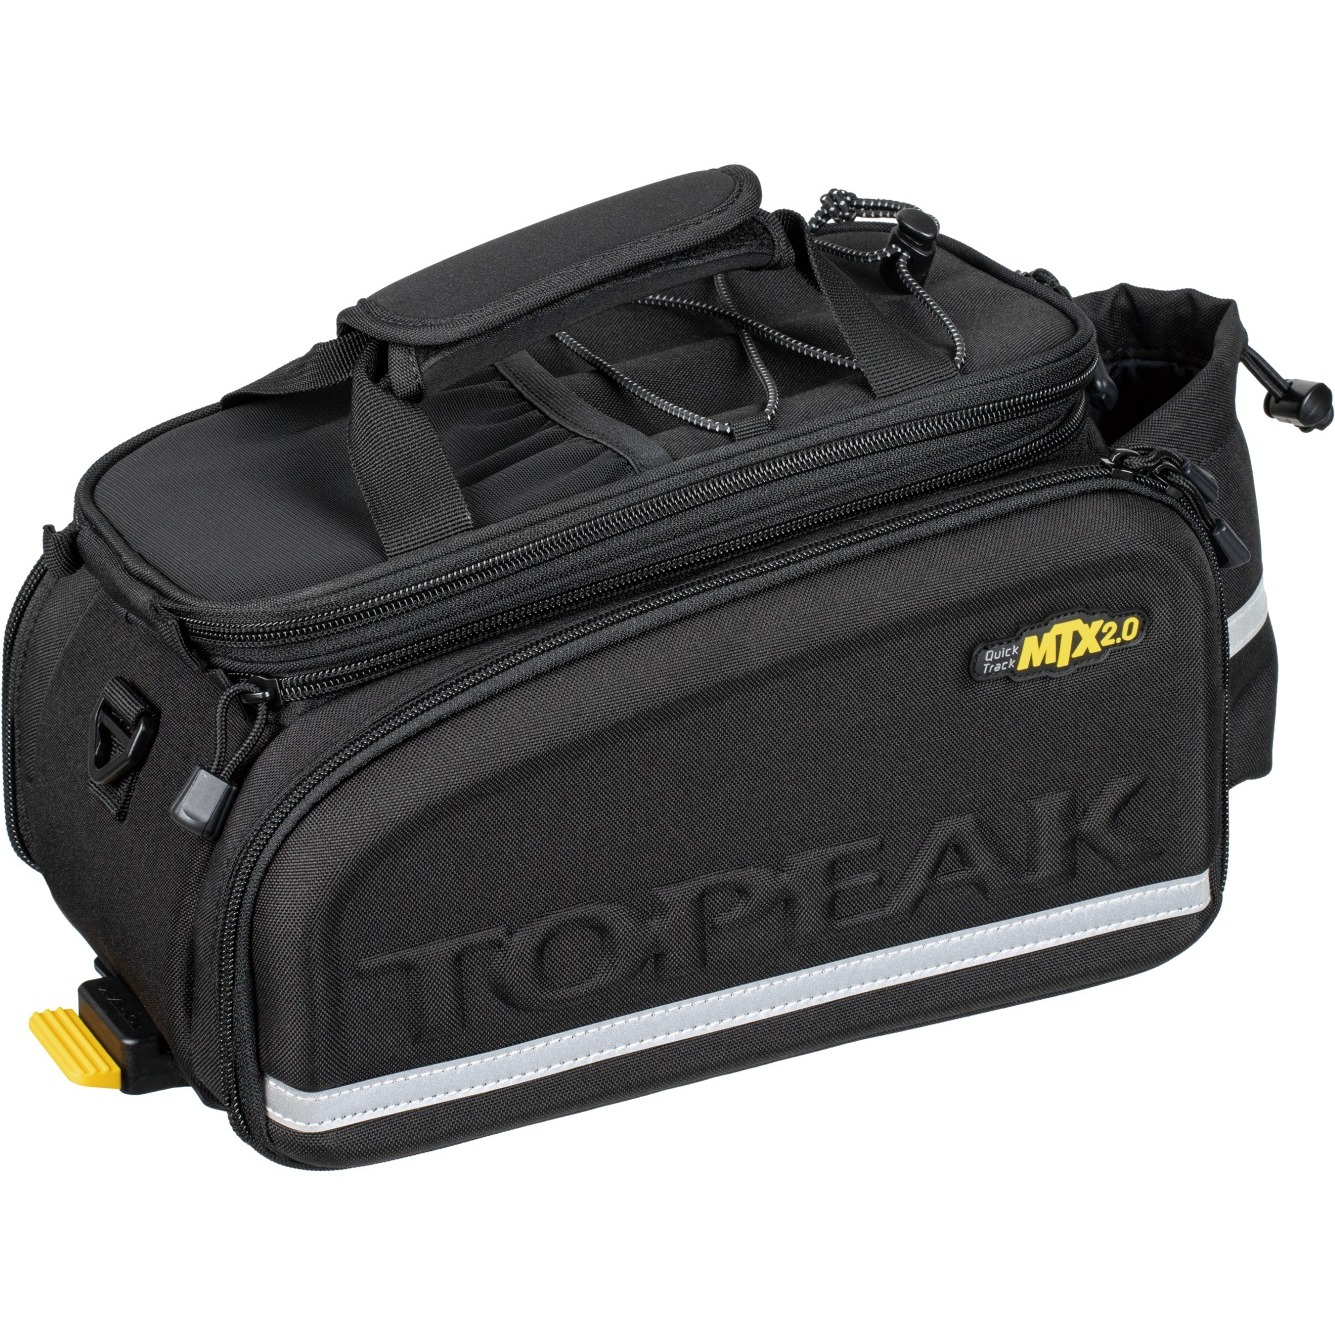 Produktbild von Topeak MTX 2.0 TrunkBag DXP Gepäckträgertasche